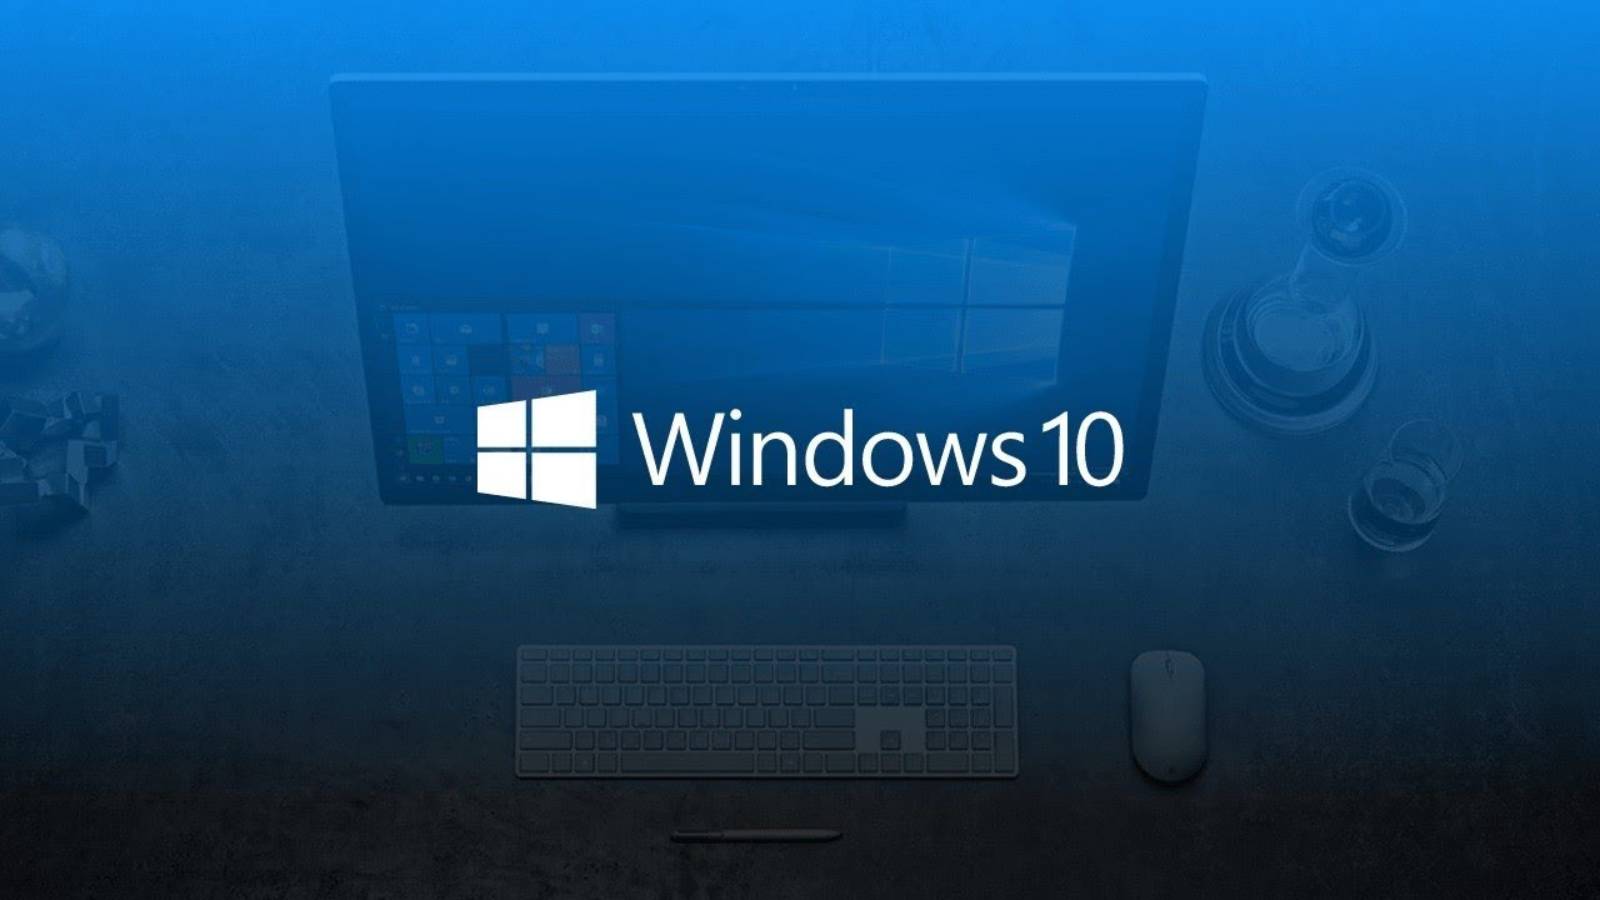 Problème de rançongiciel Windows 10